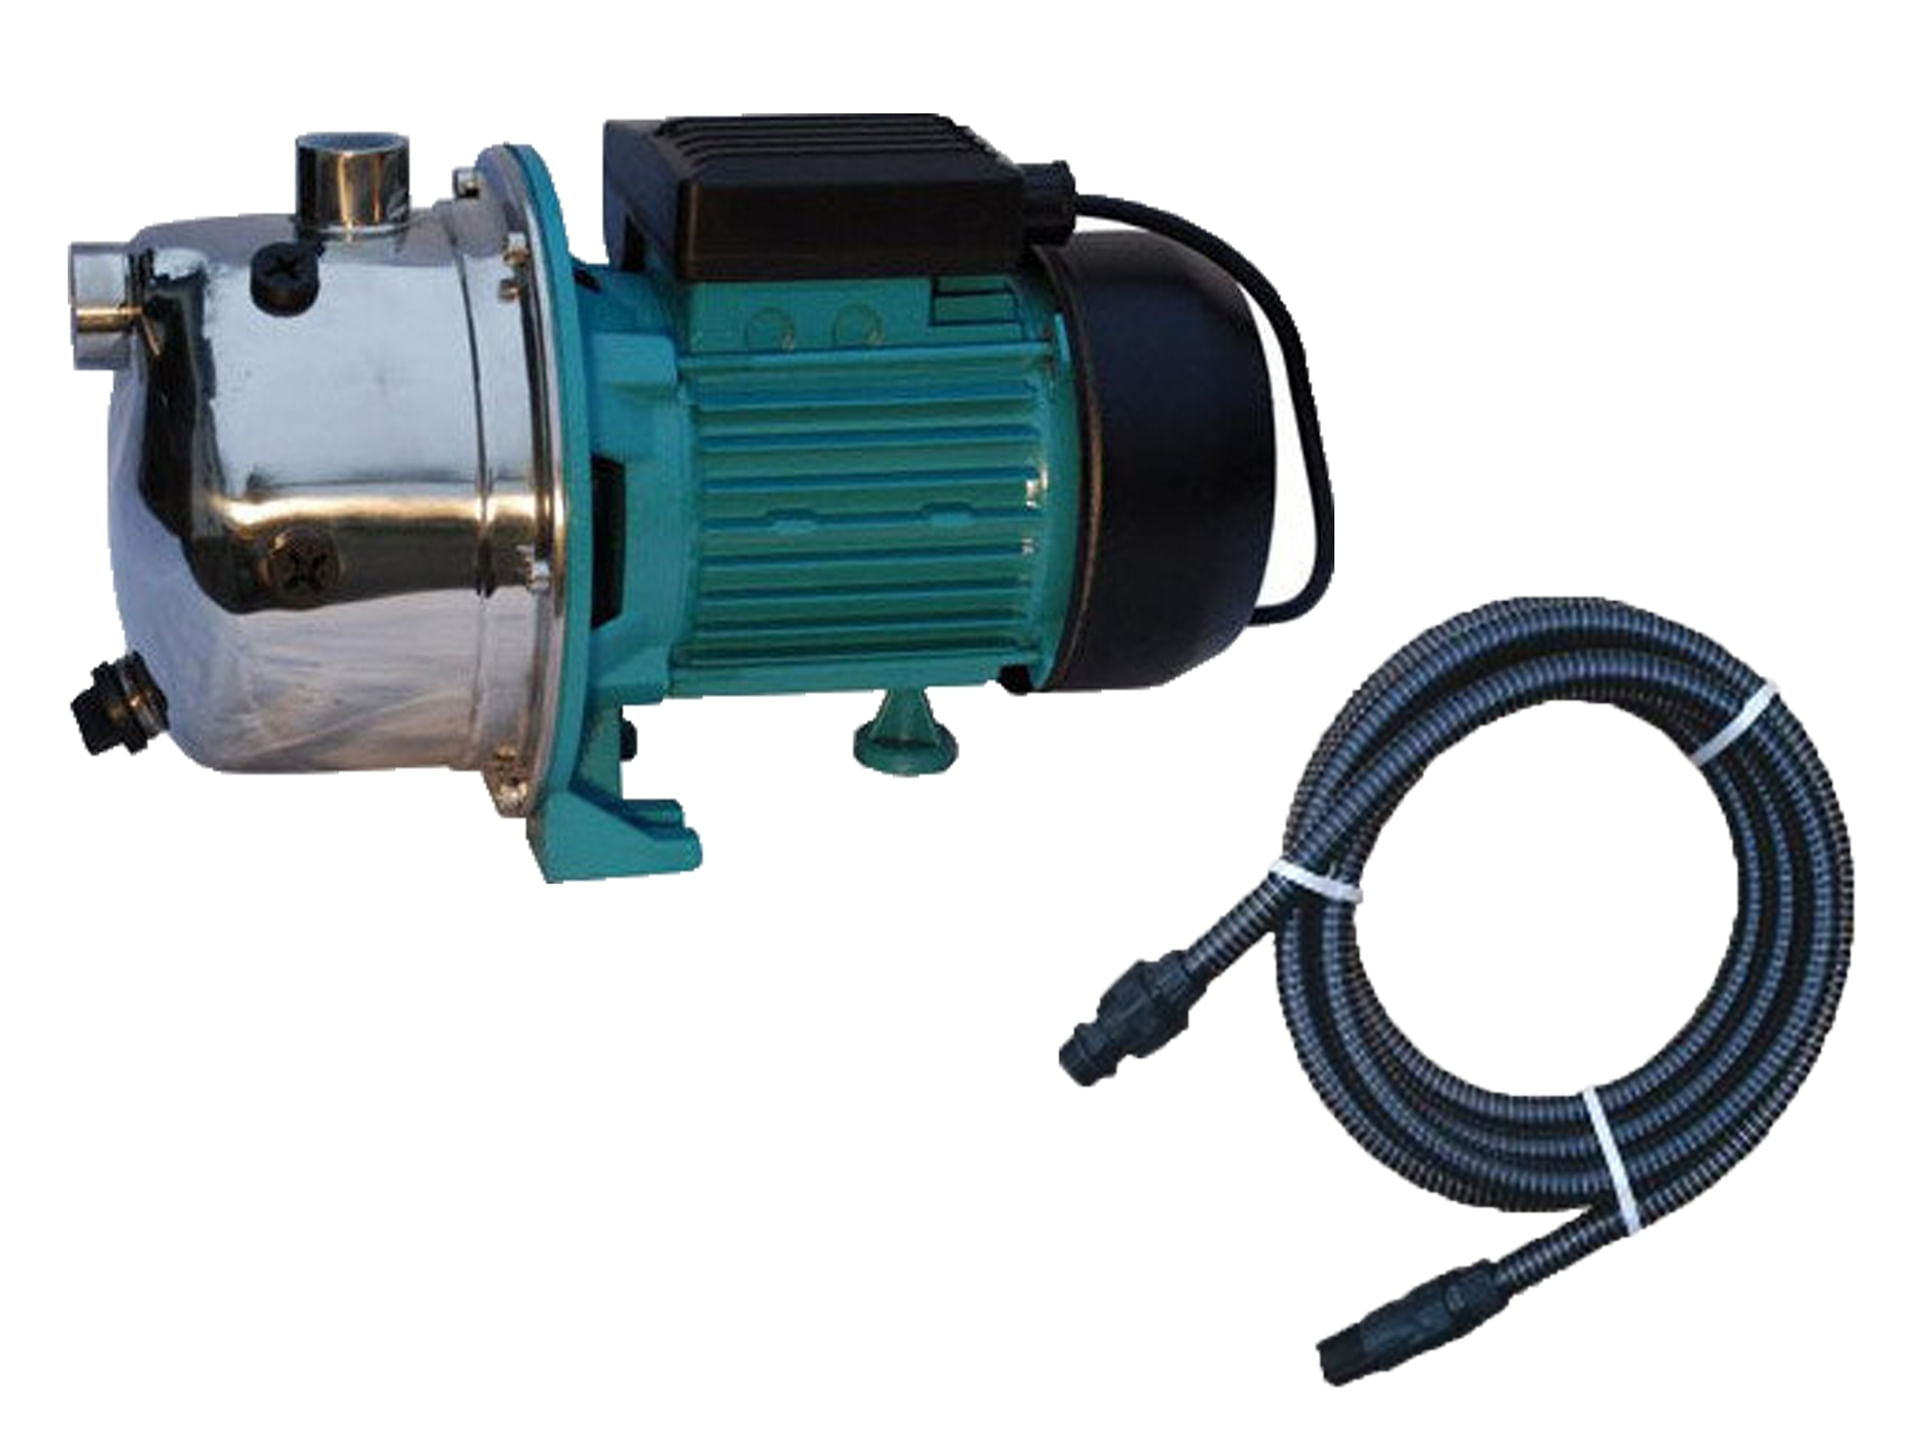 Kit pentru irigat, pompa de apa autoamorsanta APC JY 1000 1500 W cu furtun de aspirare 7m, 03020202/7m